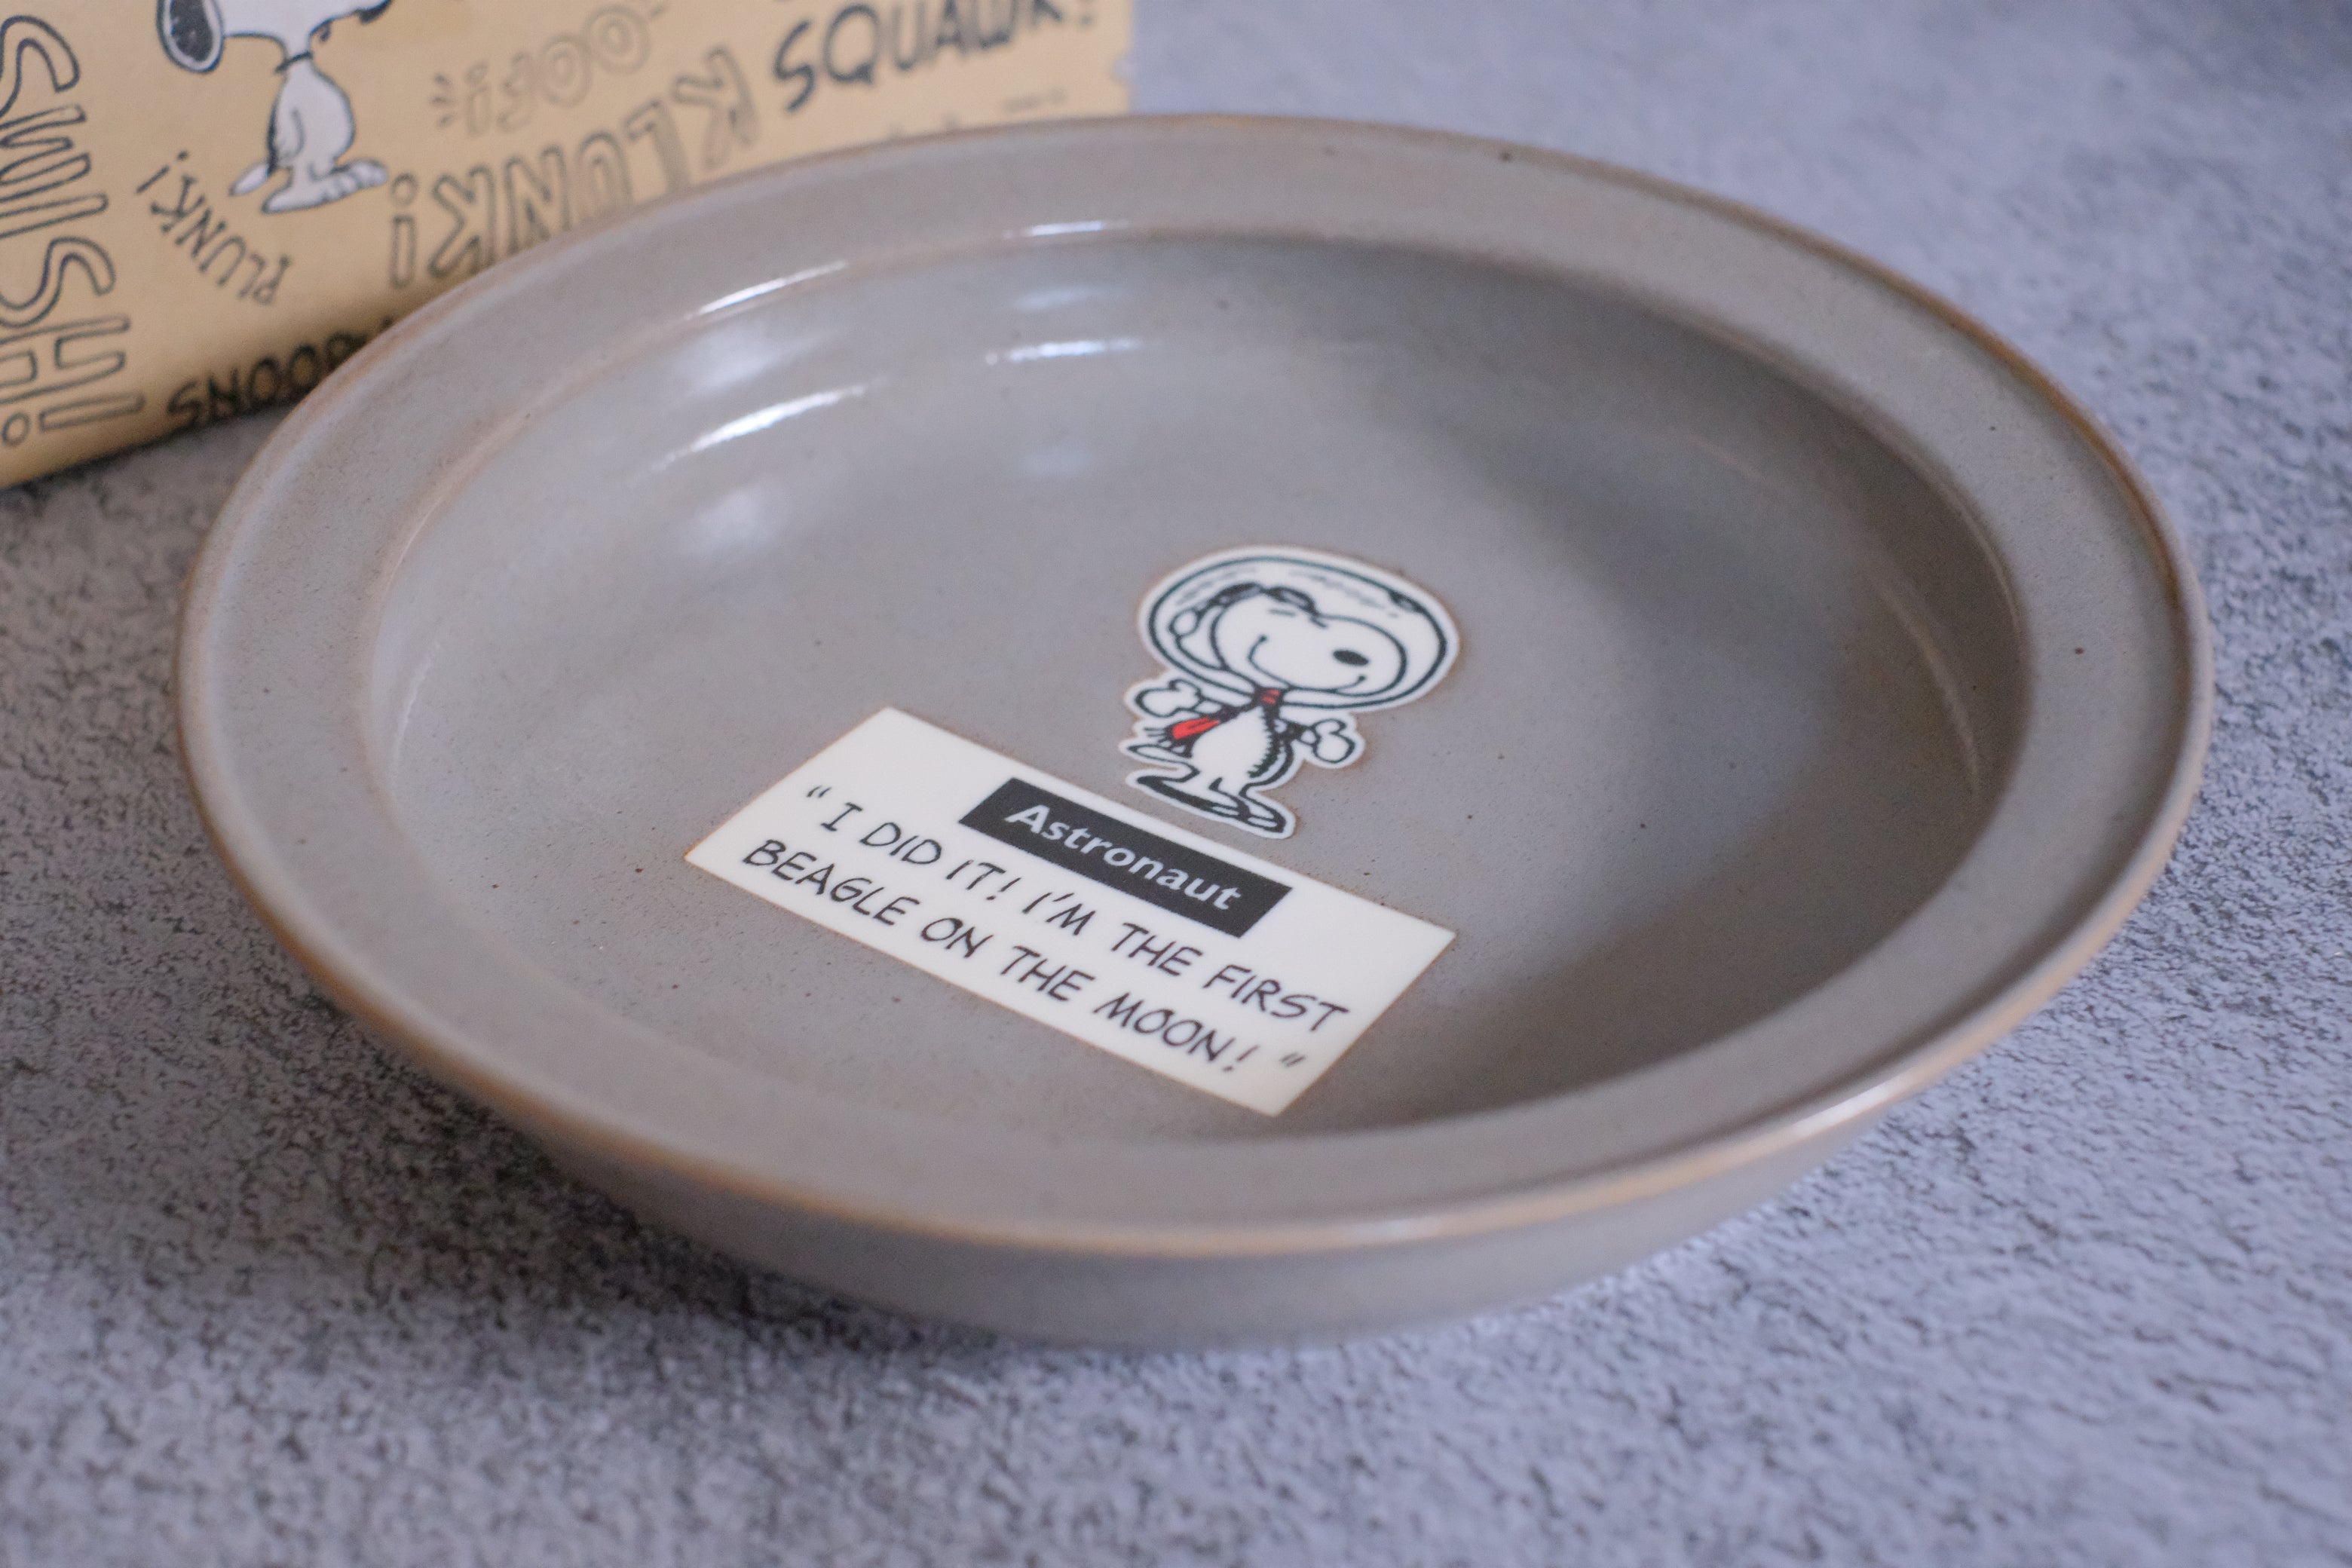 Vintage Peanuts Snoopy Joe Cool Deep Dish/ Pasta Plate Pair